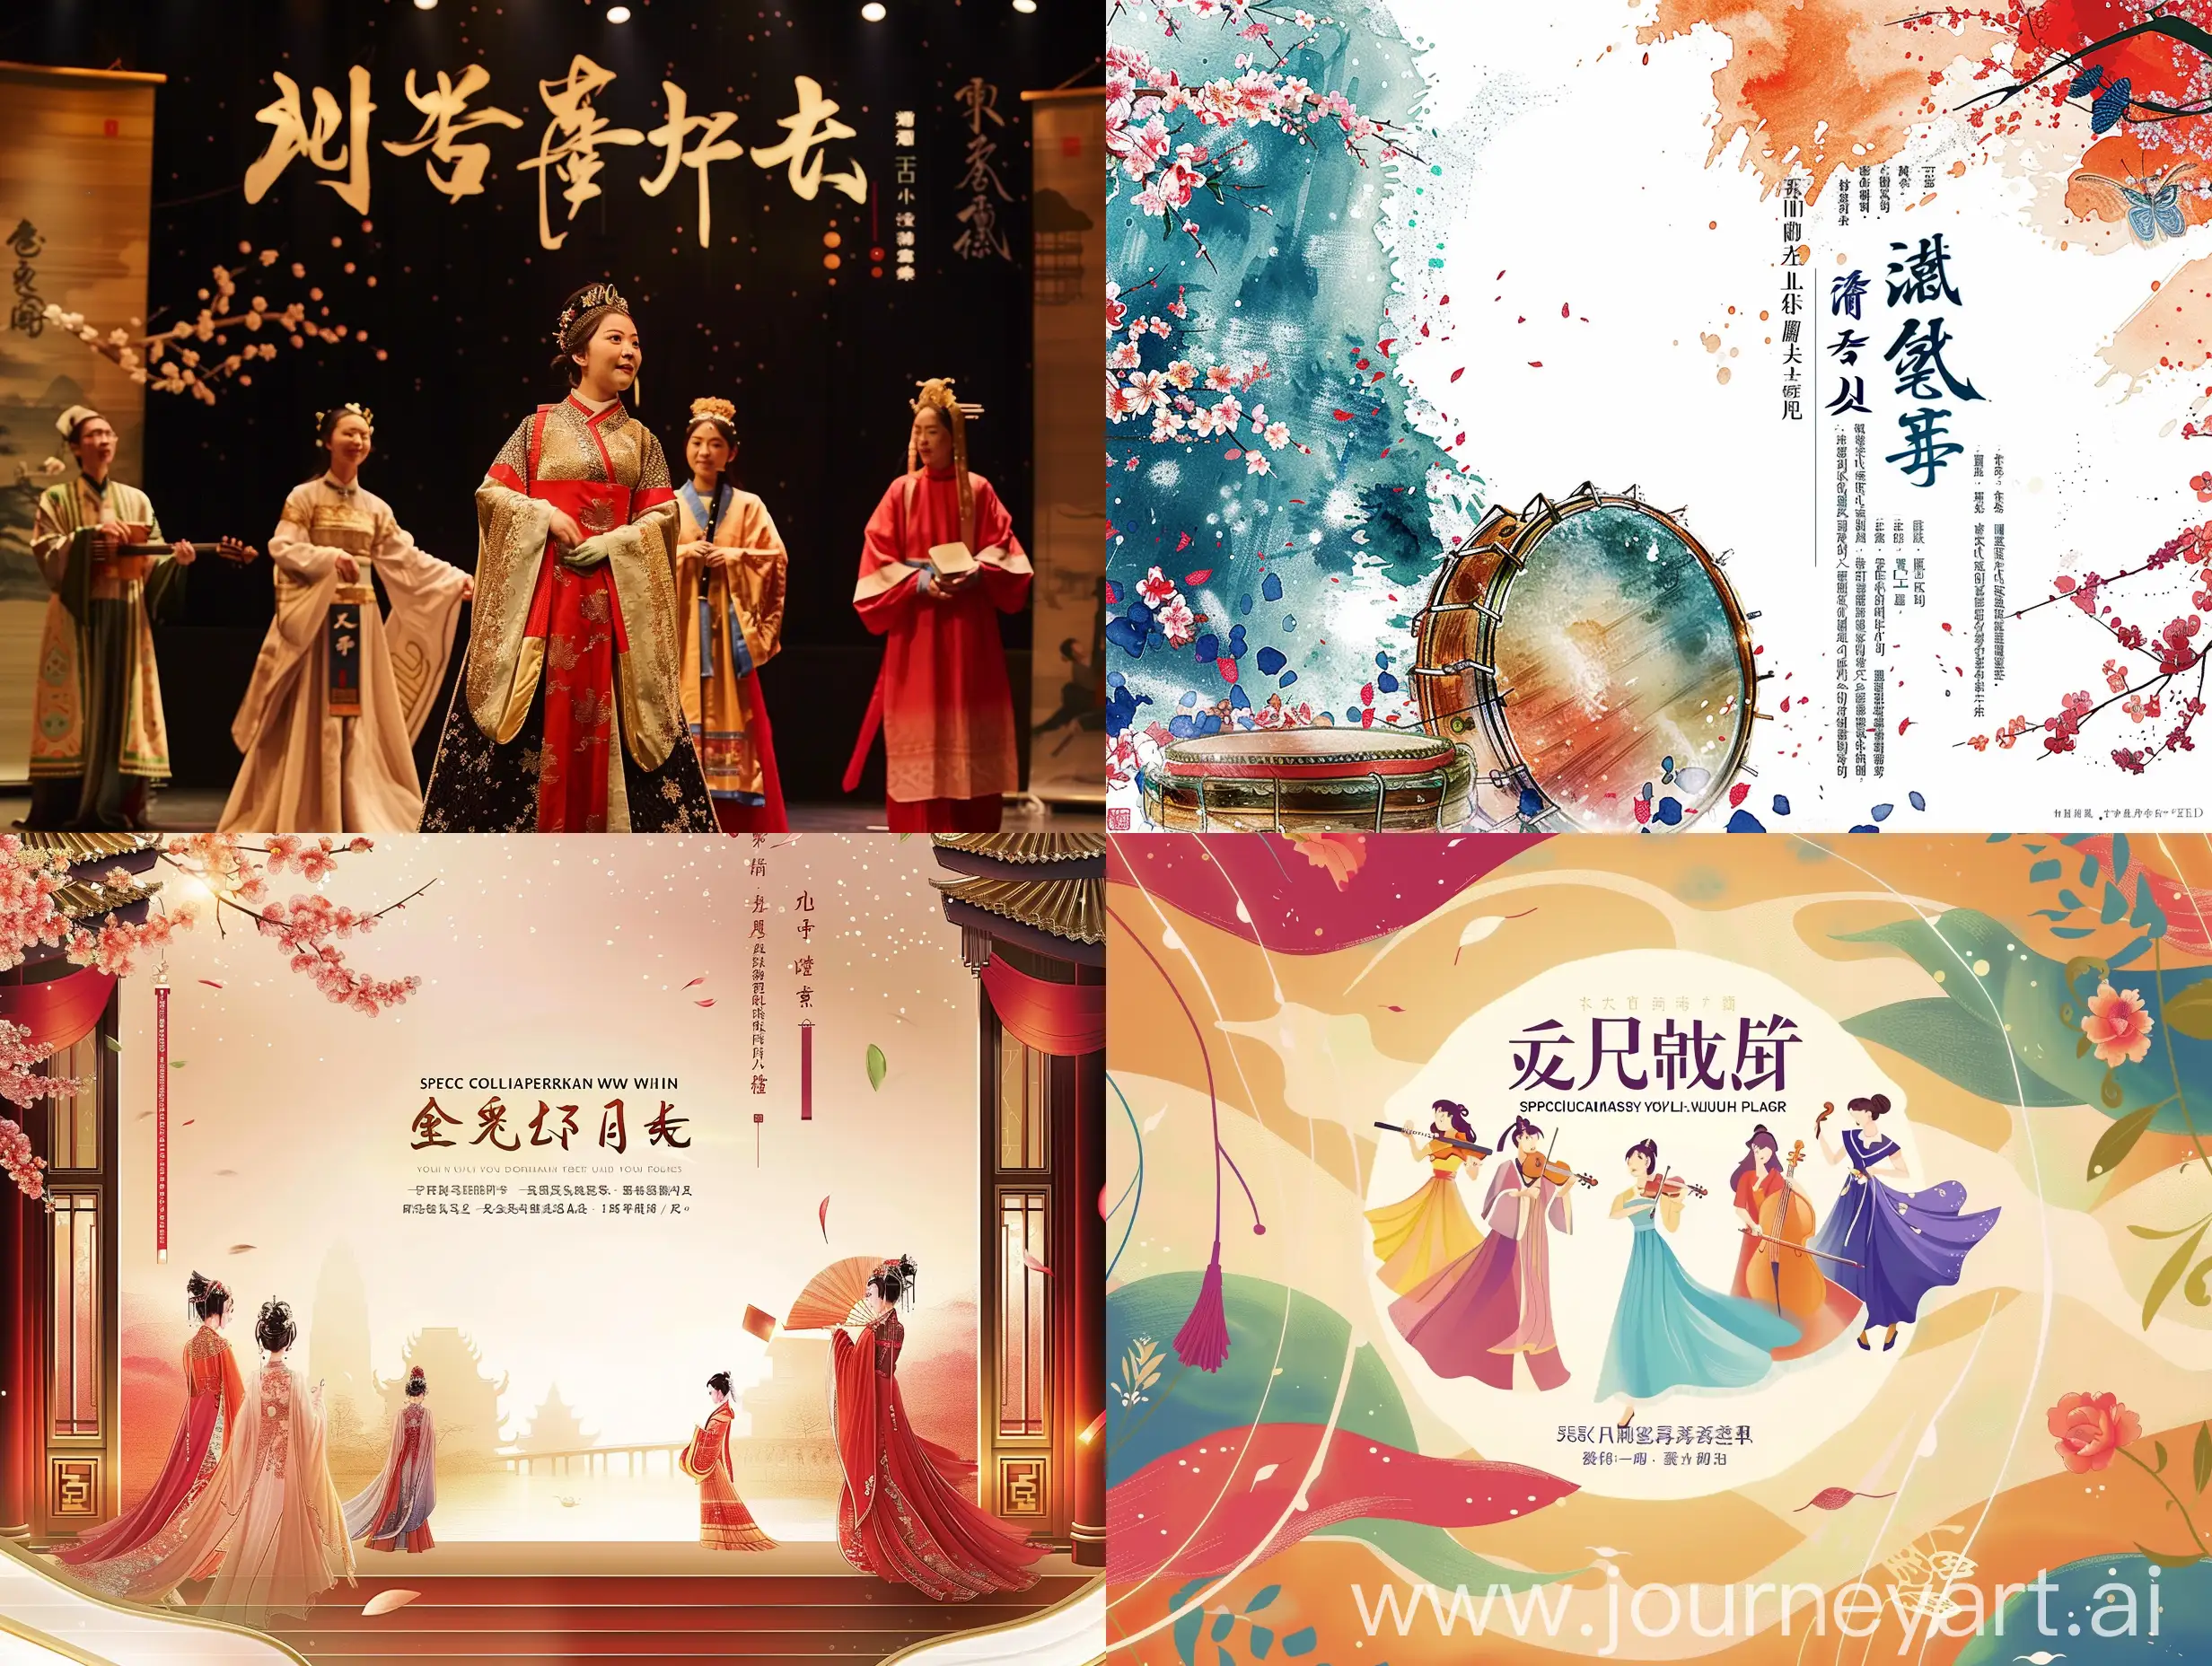 请设计并生成一张用于舞台演出的背景图，图上的文字是“武汉市青少年宫文艺部教师专场演出”。演出的主要节目是美声声乐和器乐。